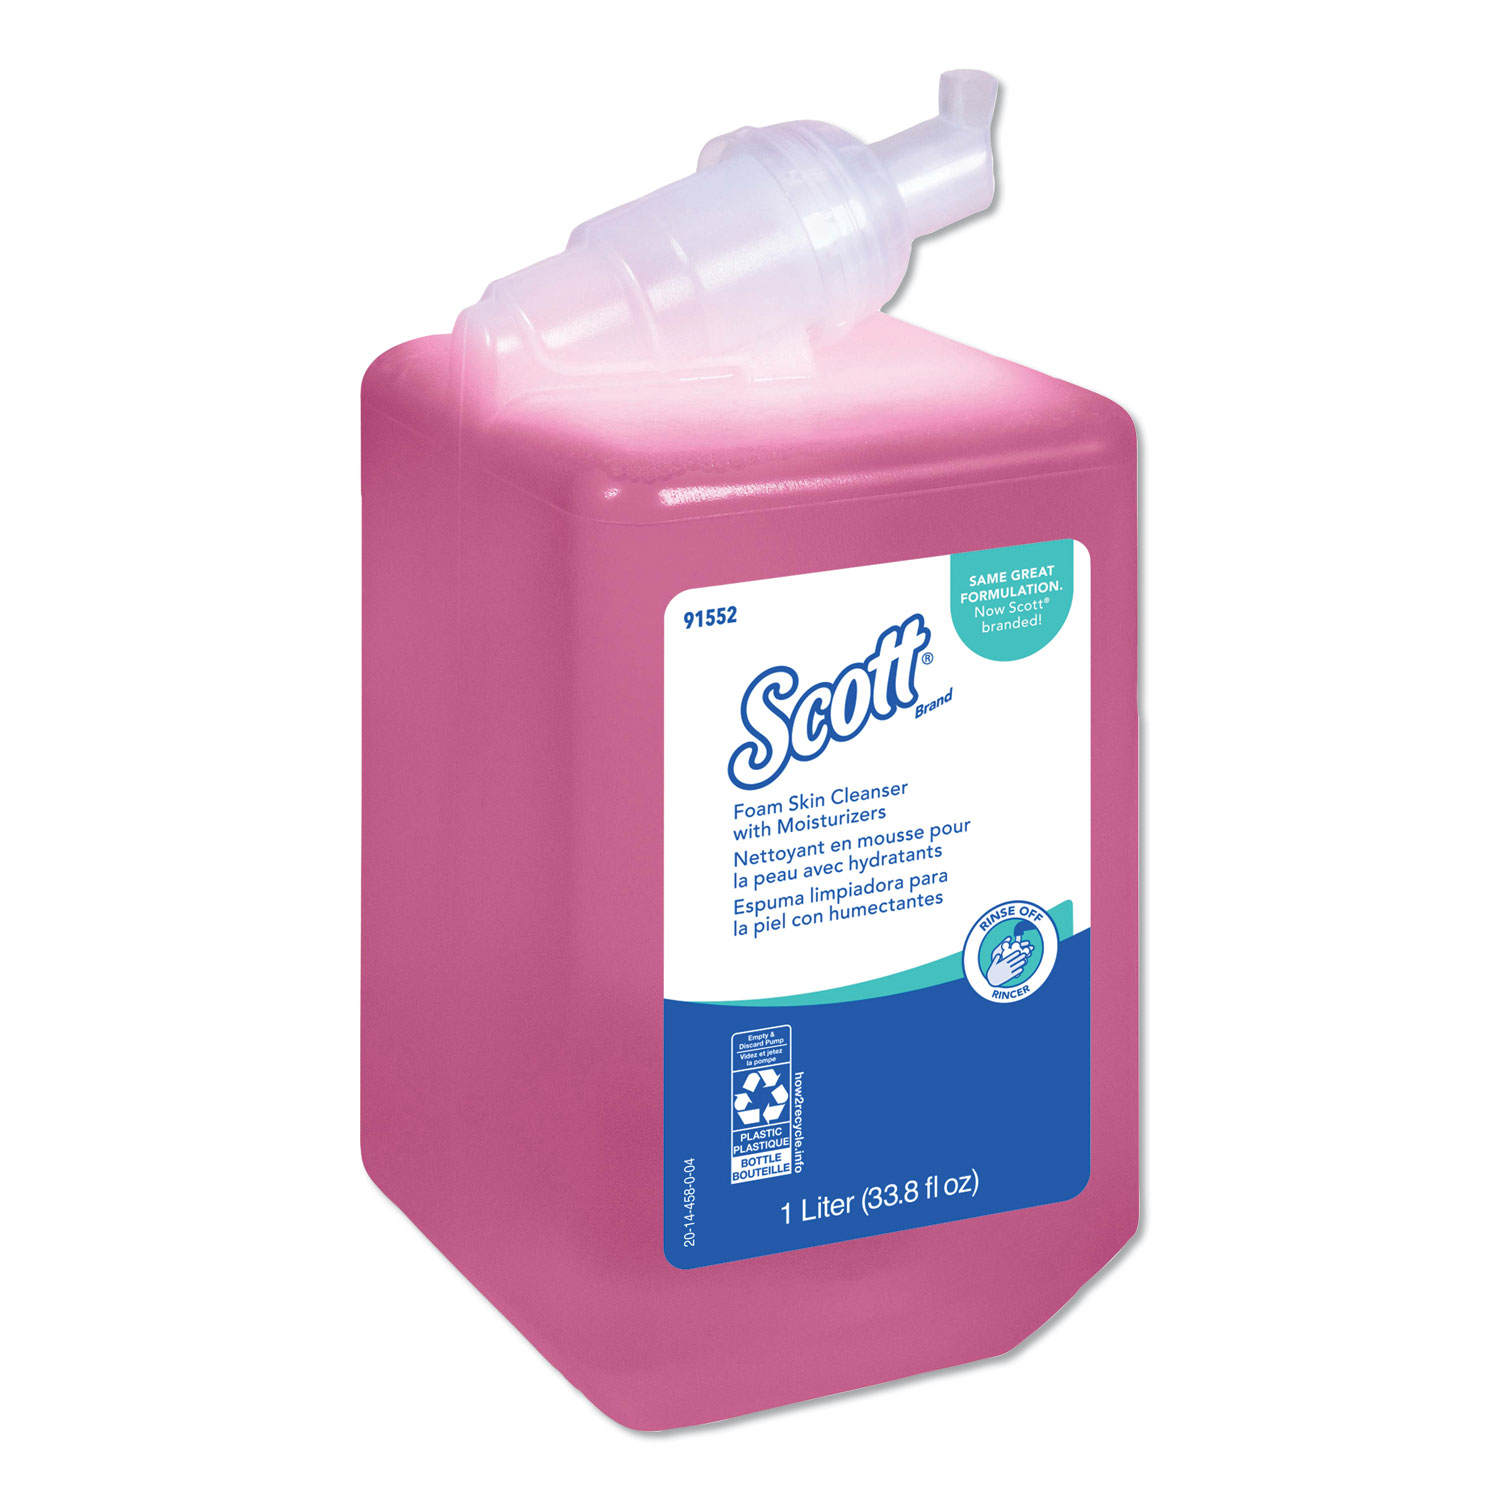  Scott 91552 Pro Foam Skin Cleanser with Moisturizers, Light Floral, 1000mL Bottle (KCC91552) 